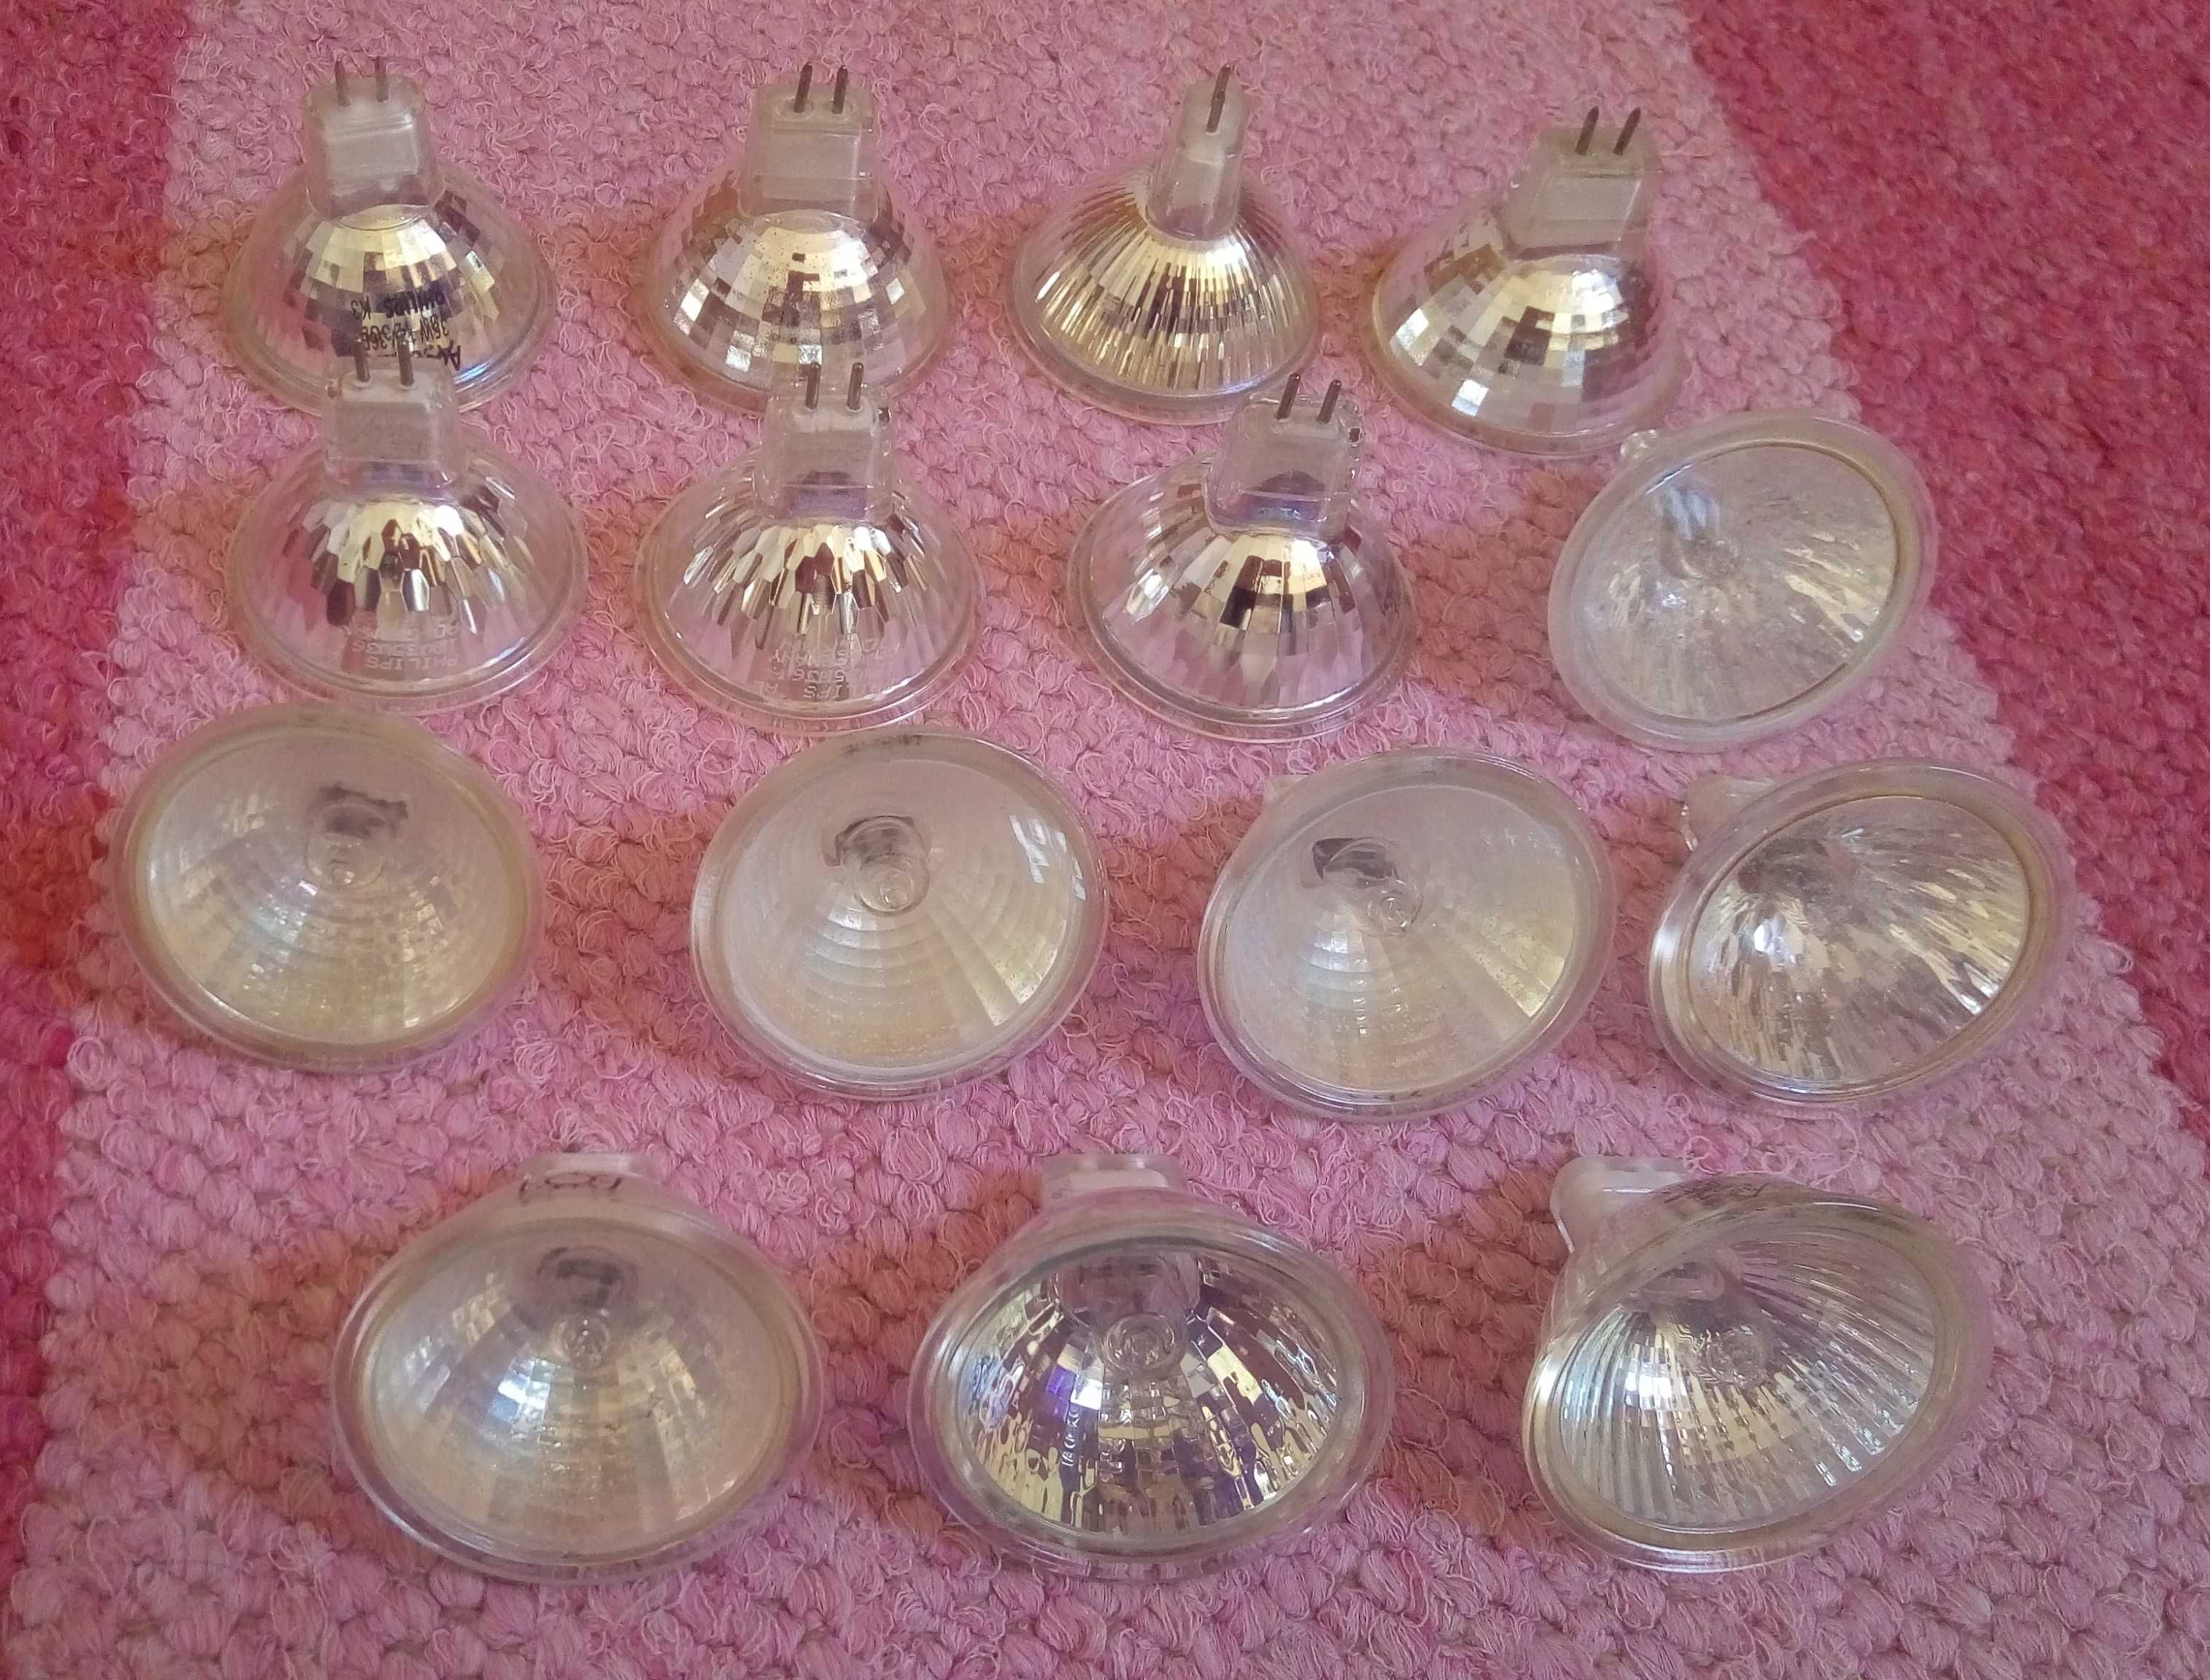 10 lampadas 12V 20W - OFERTA PORTES